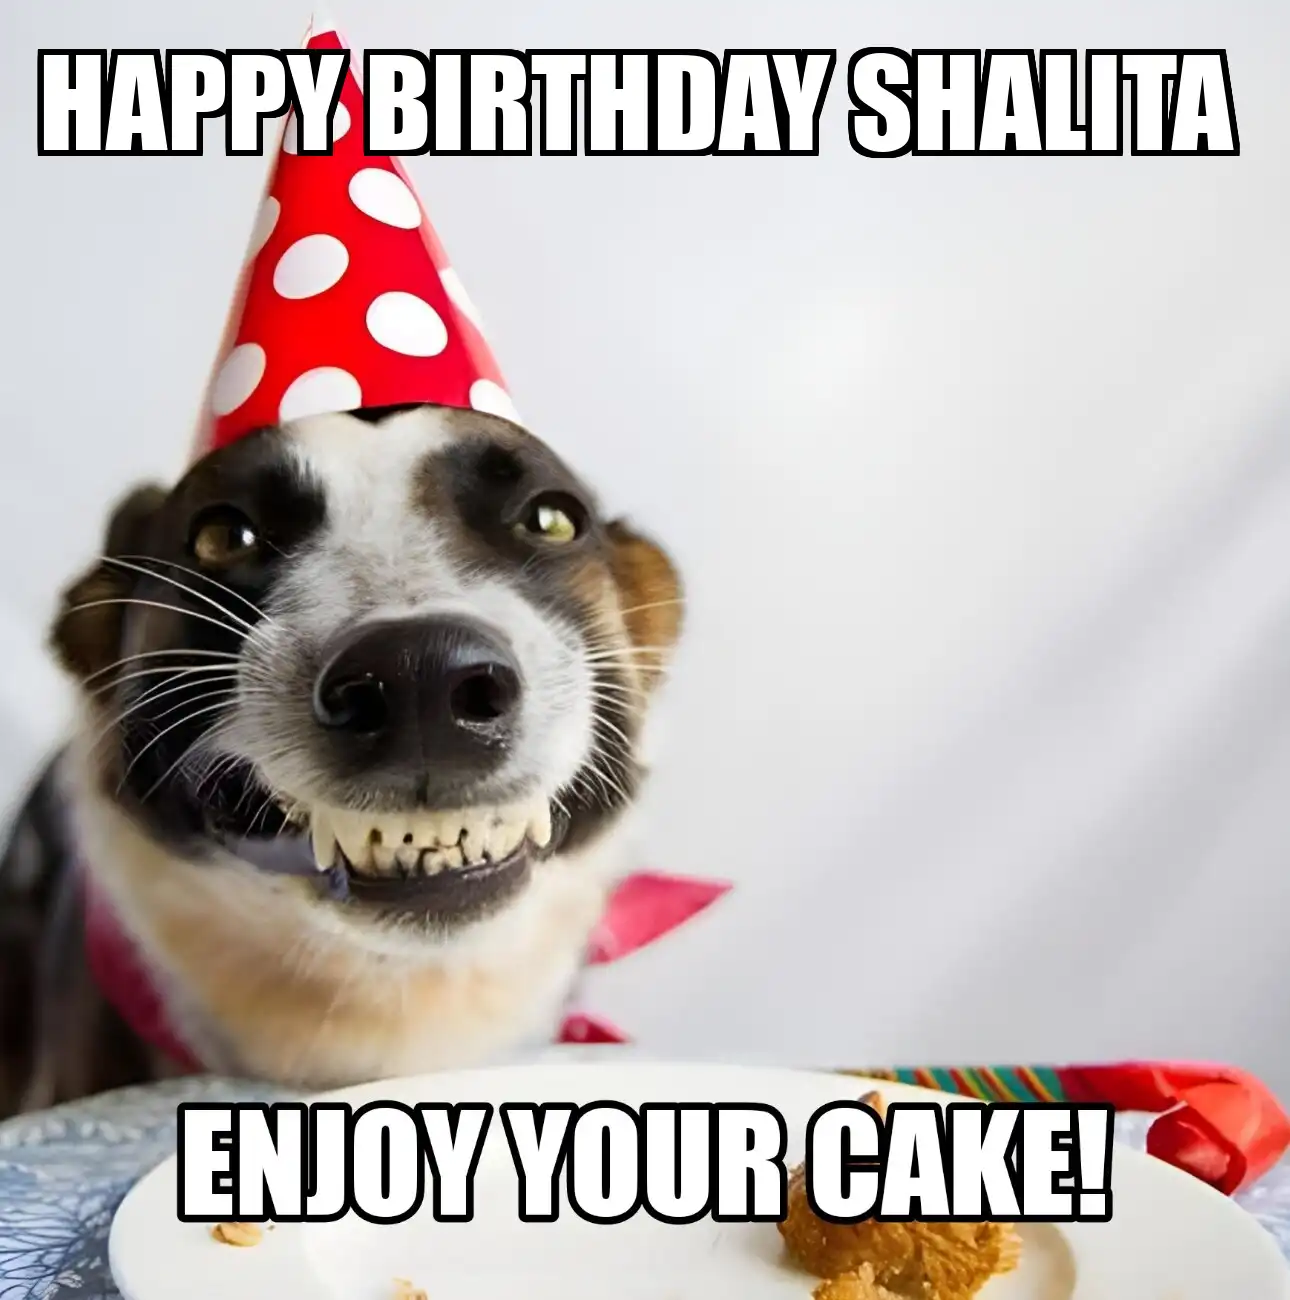 Happy Birthday Shalita Enjoy Your Cake Dog Meme